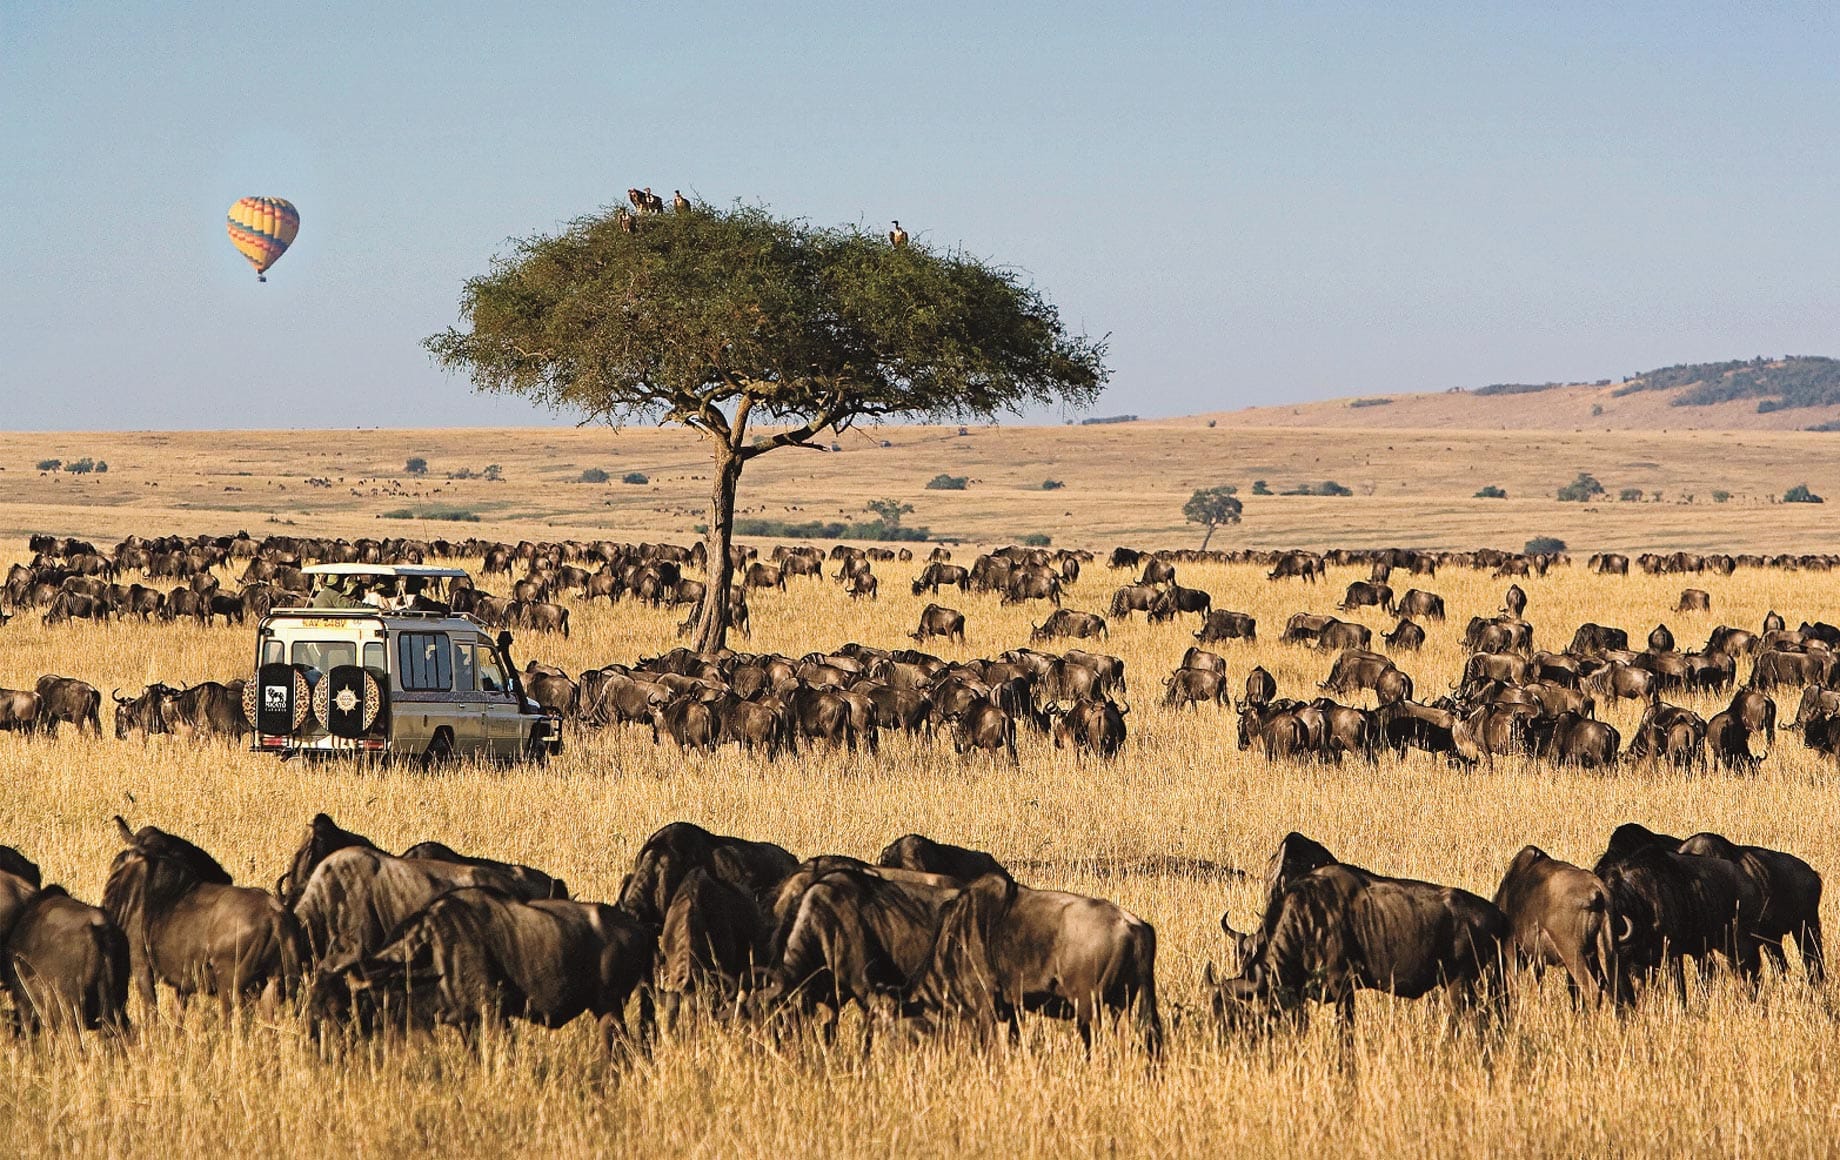 Wildlife at Maasai Mara